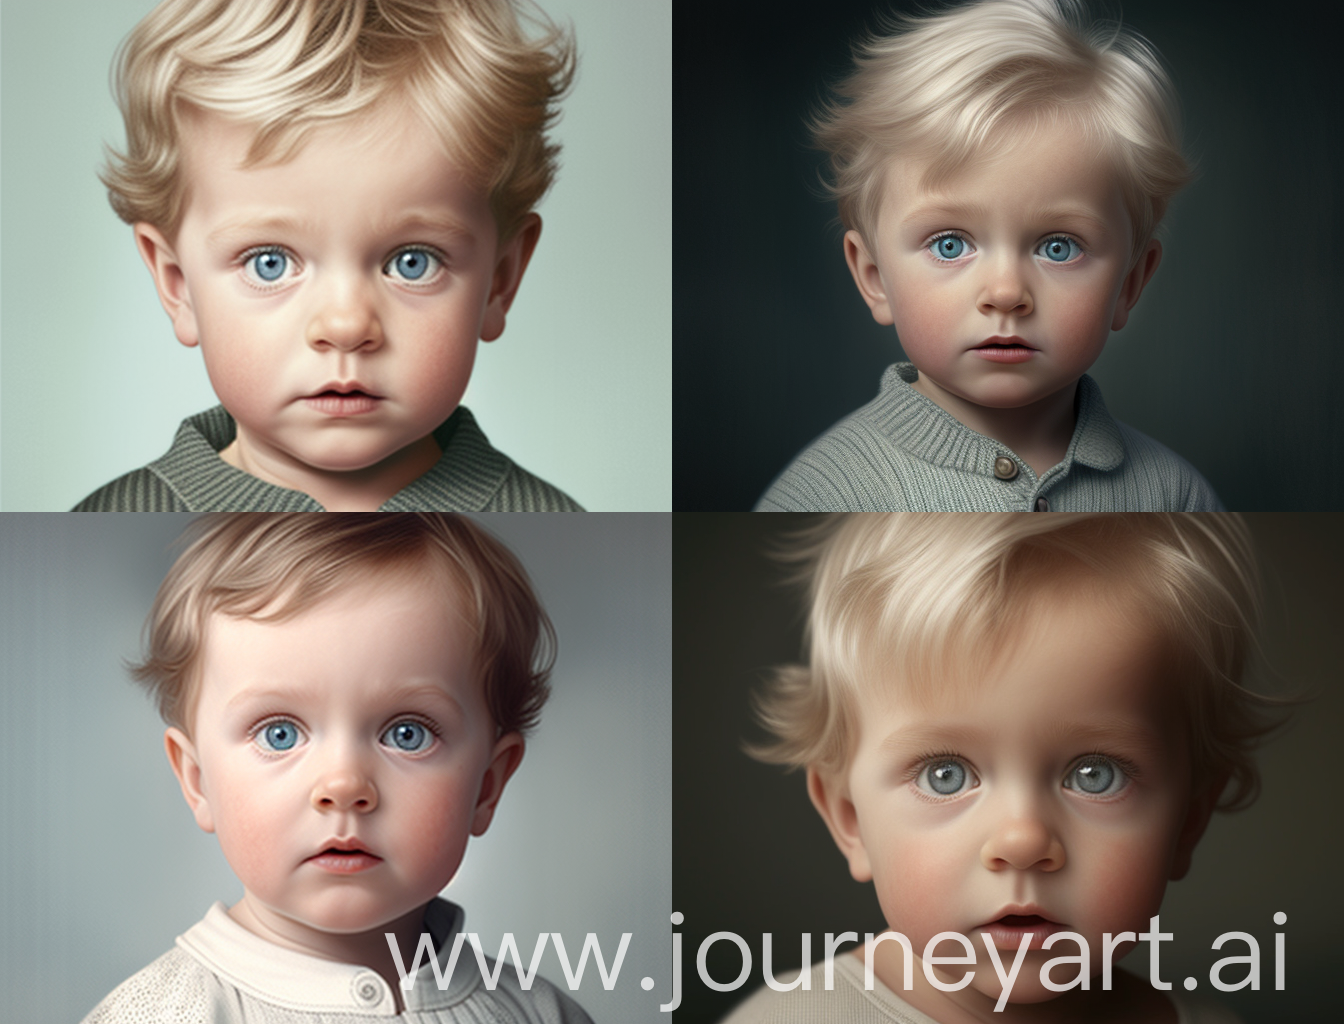 мальчик 10 месяцев с большими серо-голубыми глазами и немного лопоухий, с редкими волосиками
